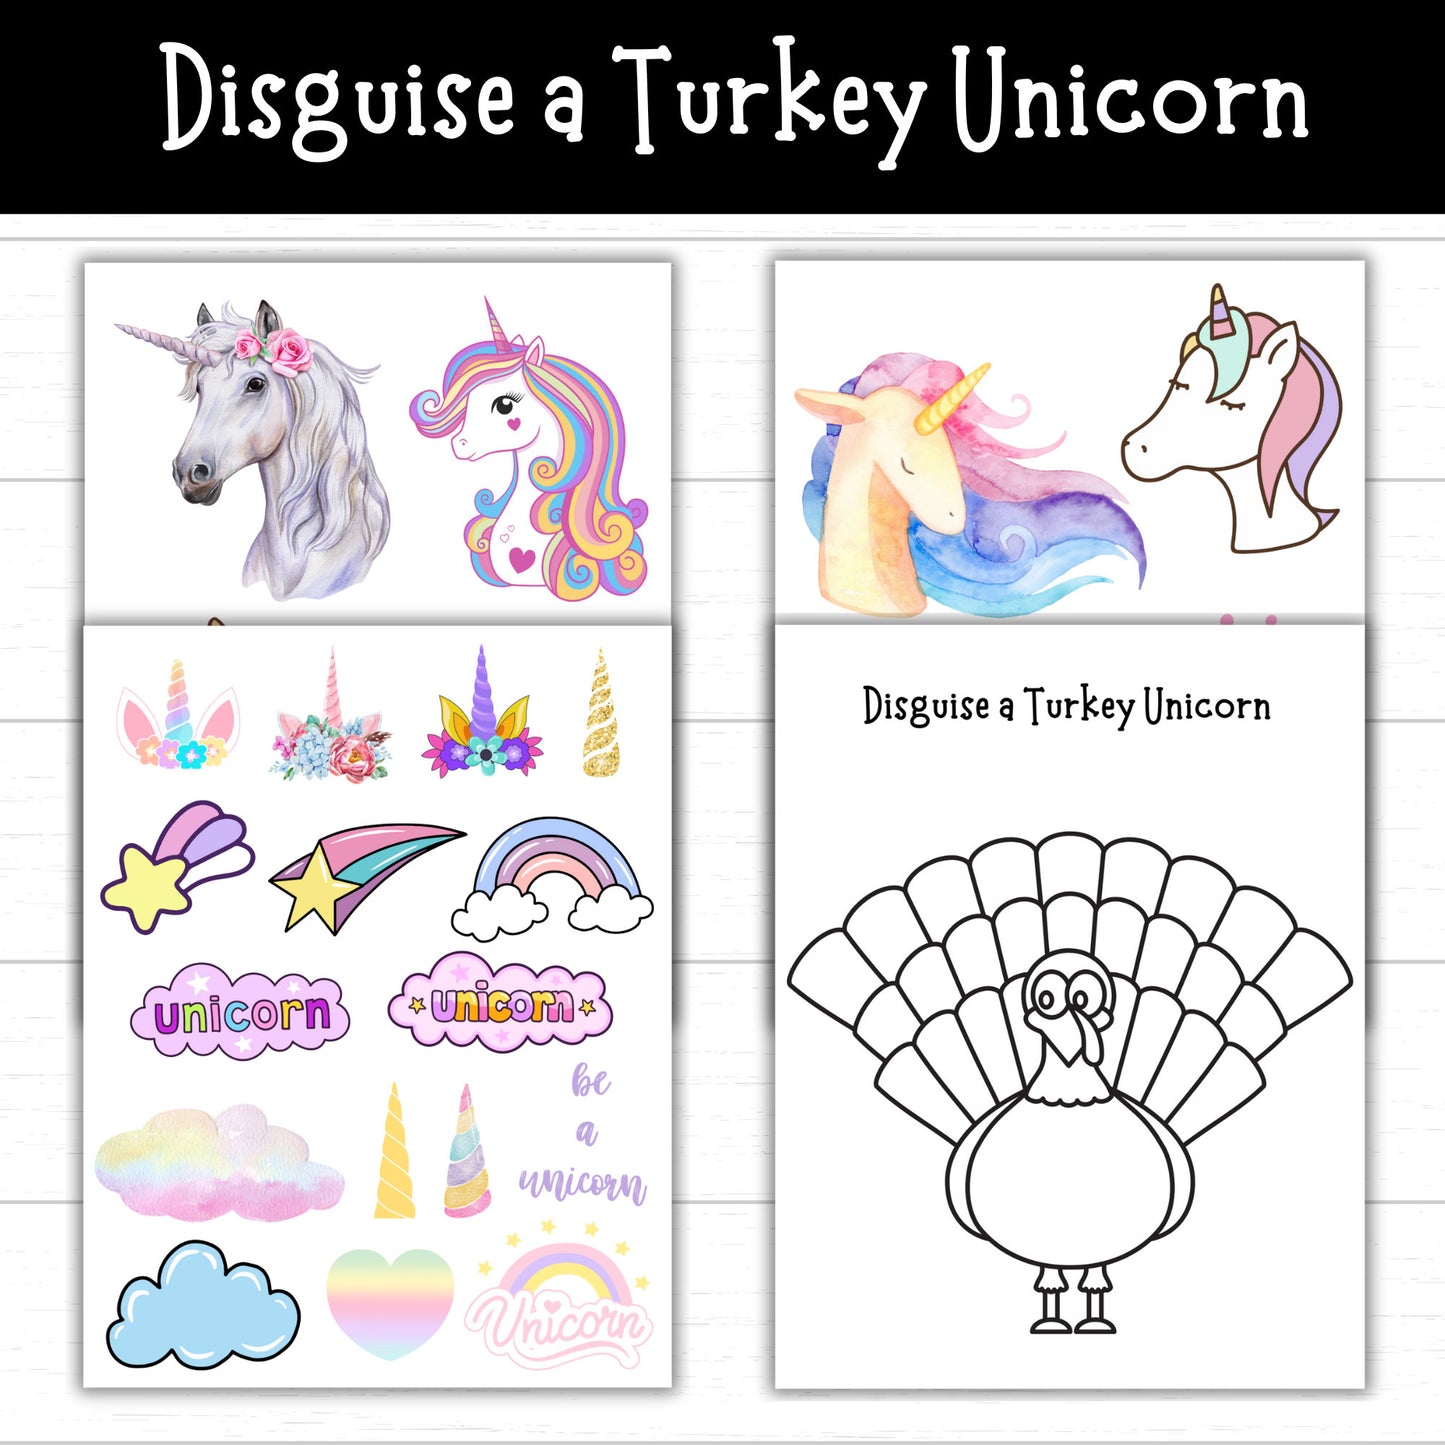 Disguise a Turkey Unicorn, Disguise a Turkey Unicorn, Unicorn Turkey, Disguise a Turkey Project, Turkey Disguise Idea, Unicorn Disguise Idea